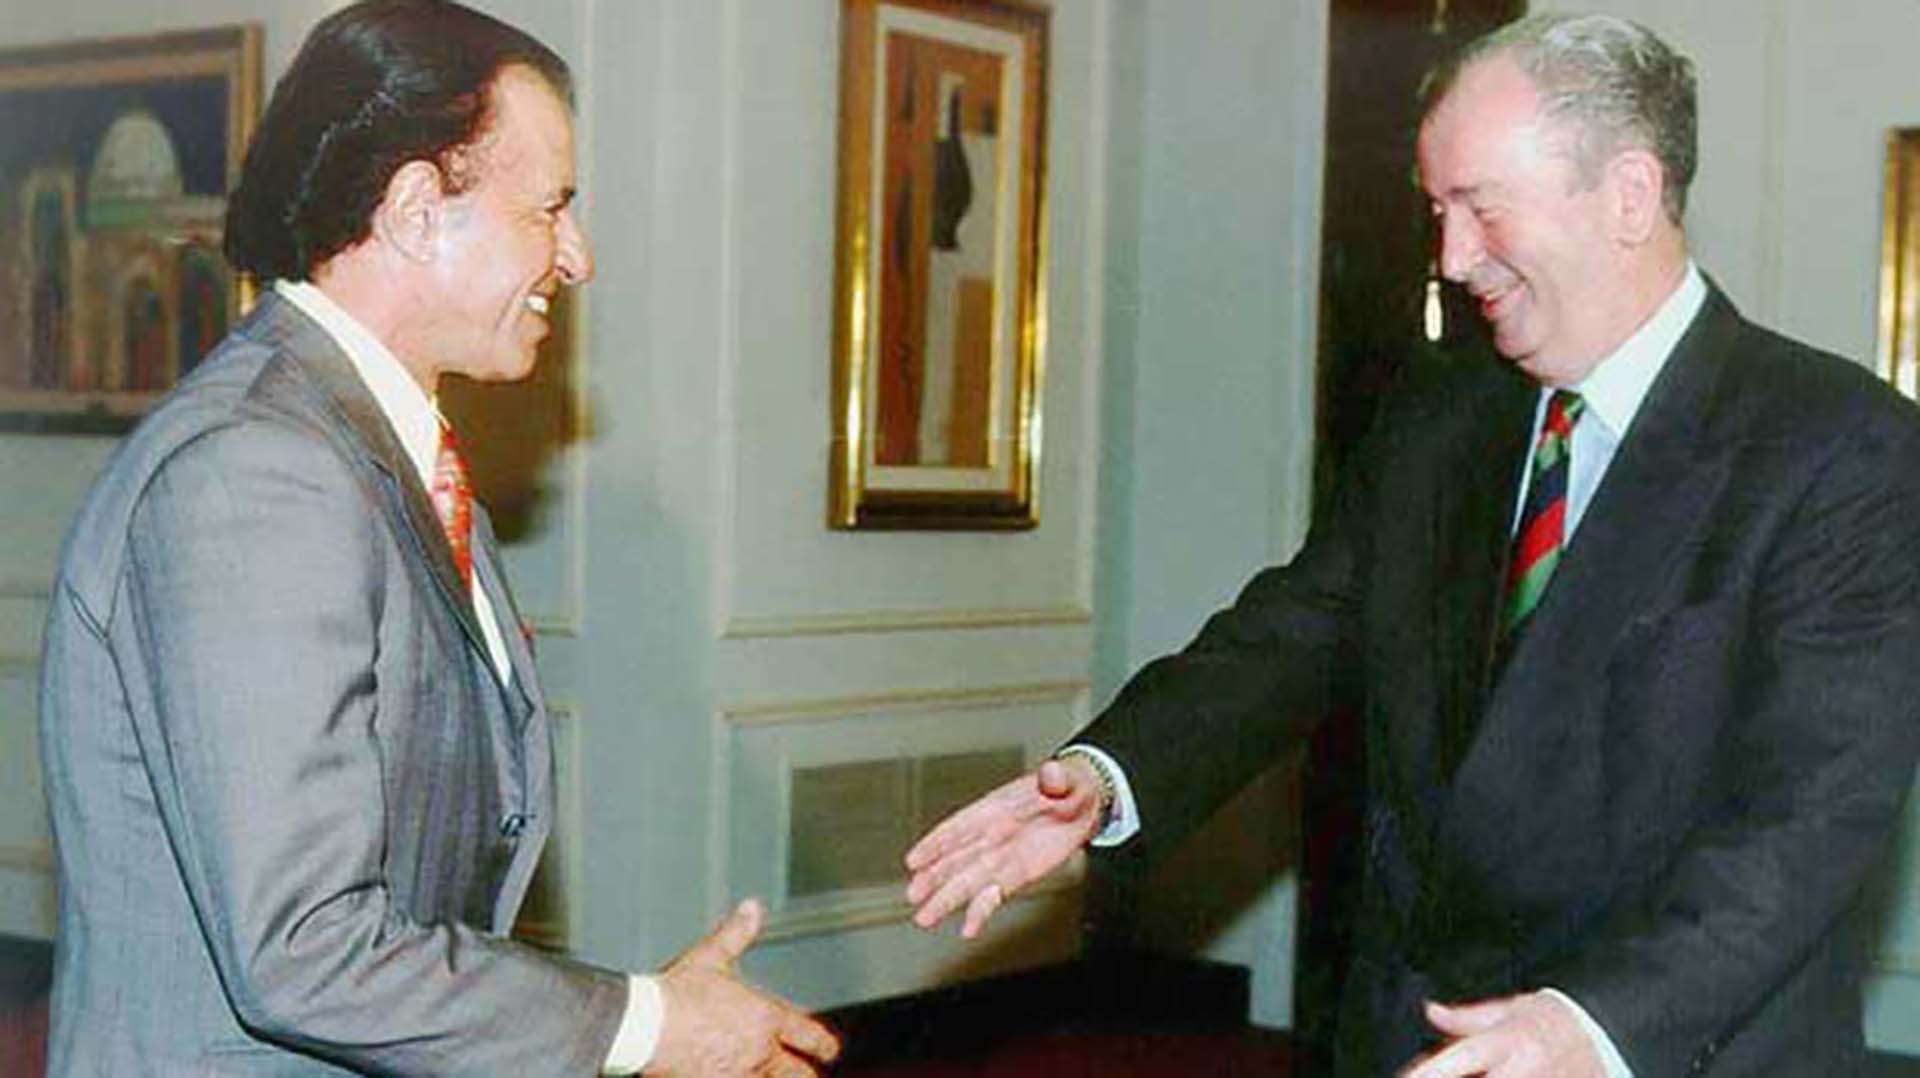 En otro encuento con el entonces presidente de la AFA Julio Grondona. Carlos Menem, siempre se mostró cercano al fútbol y a los deportes en general